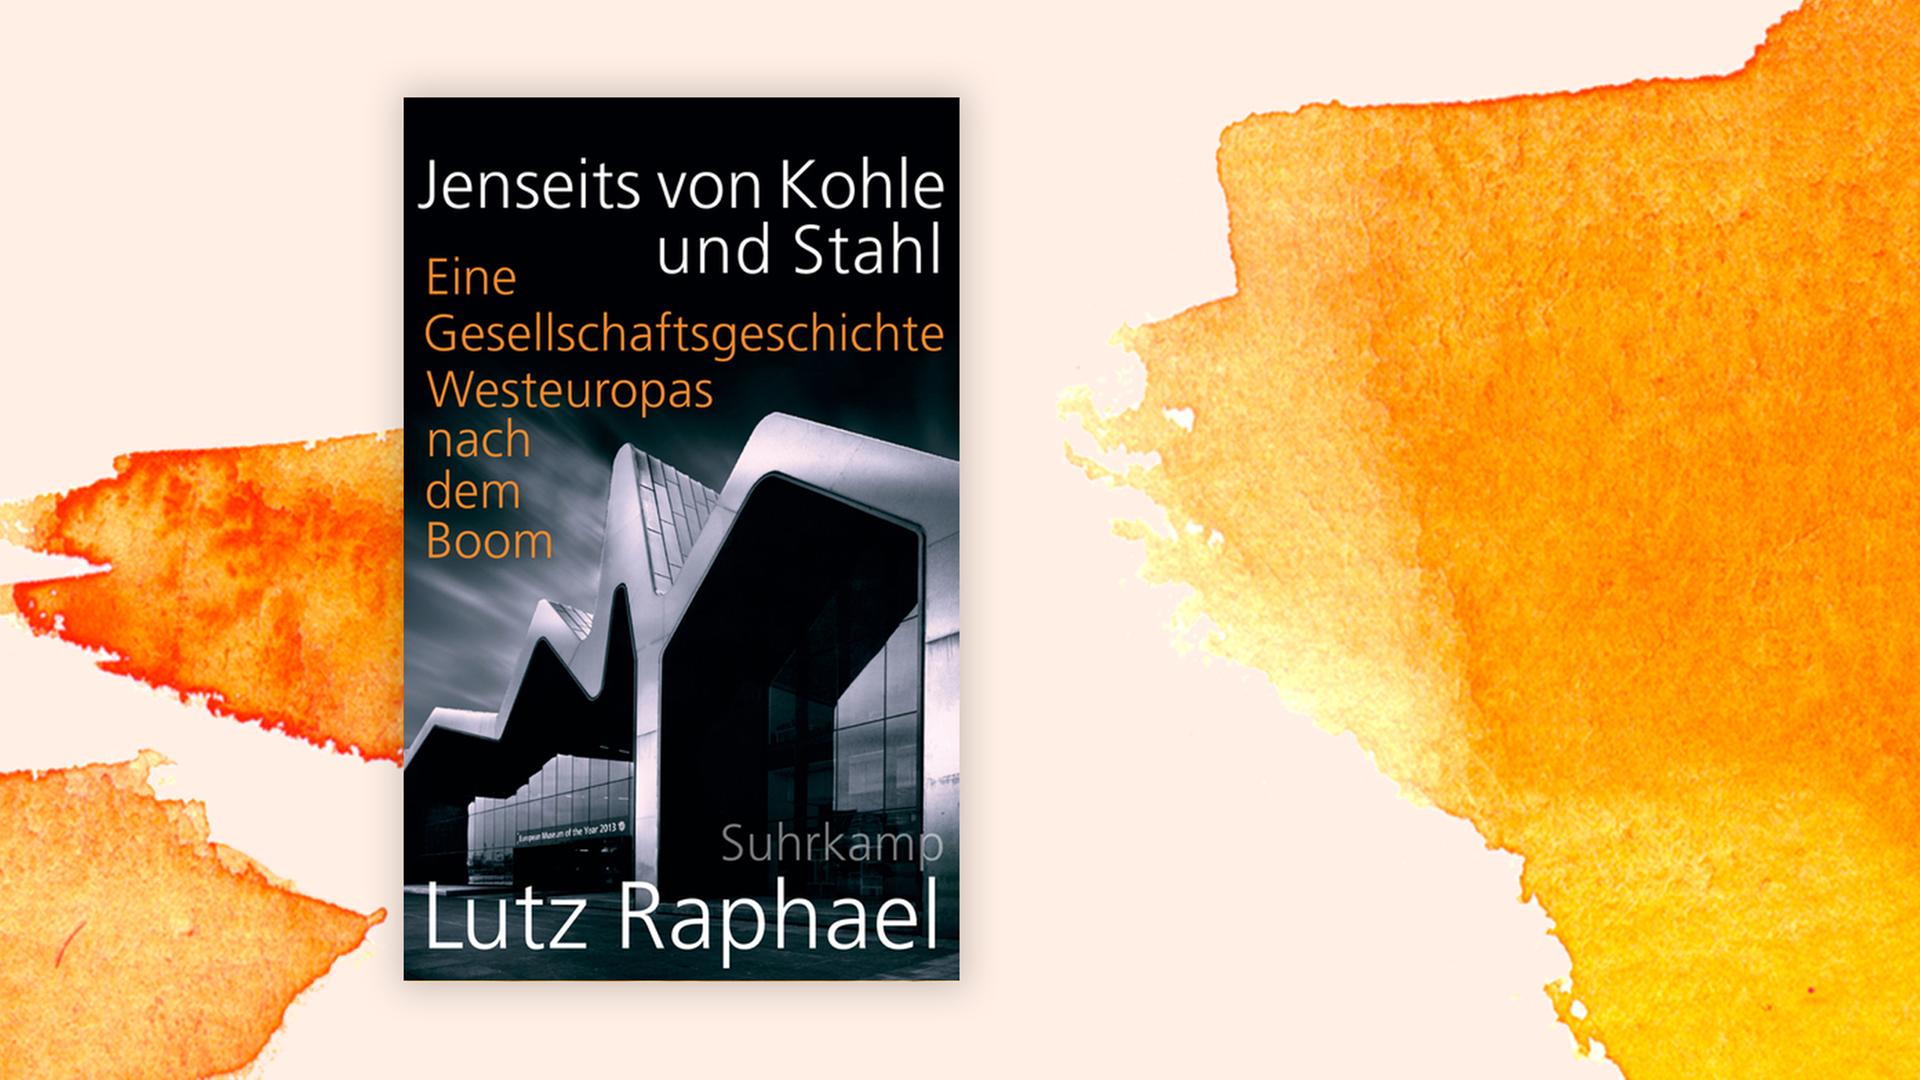 Das Buchcover des Buches "Jenseits von Kohle" von Lutz Raphael.